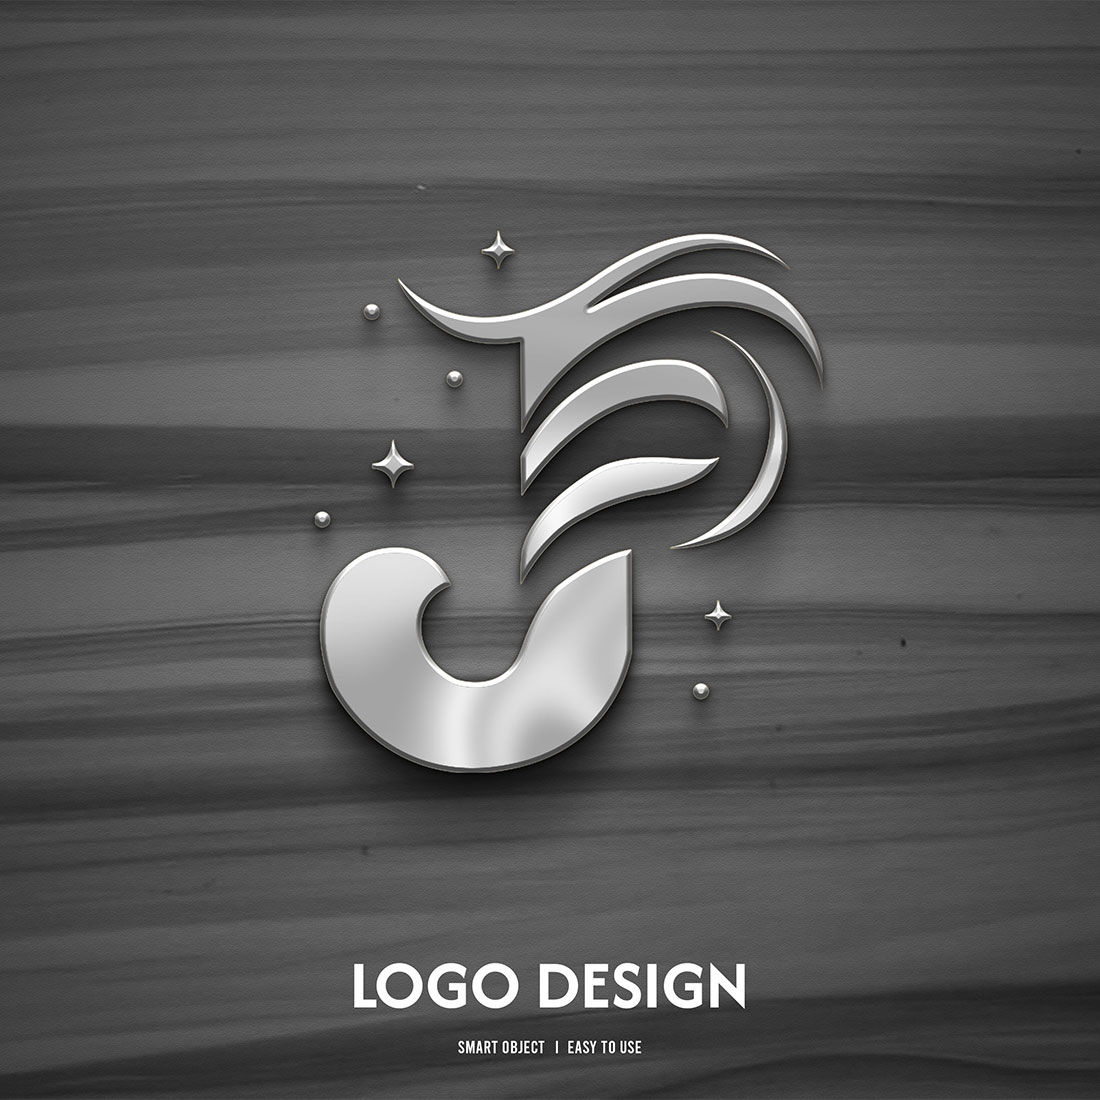 J LOgo Complete Design cover image.